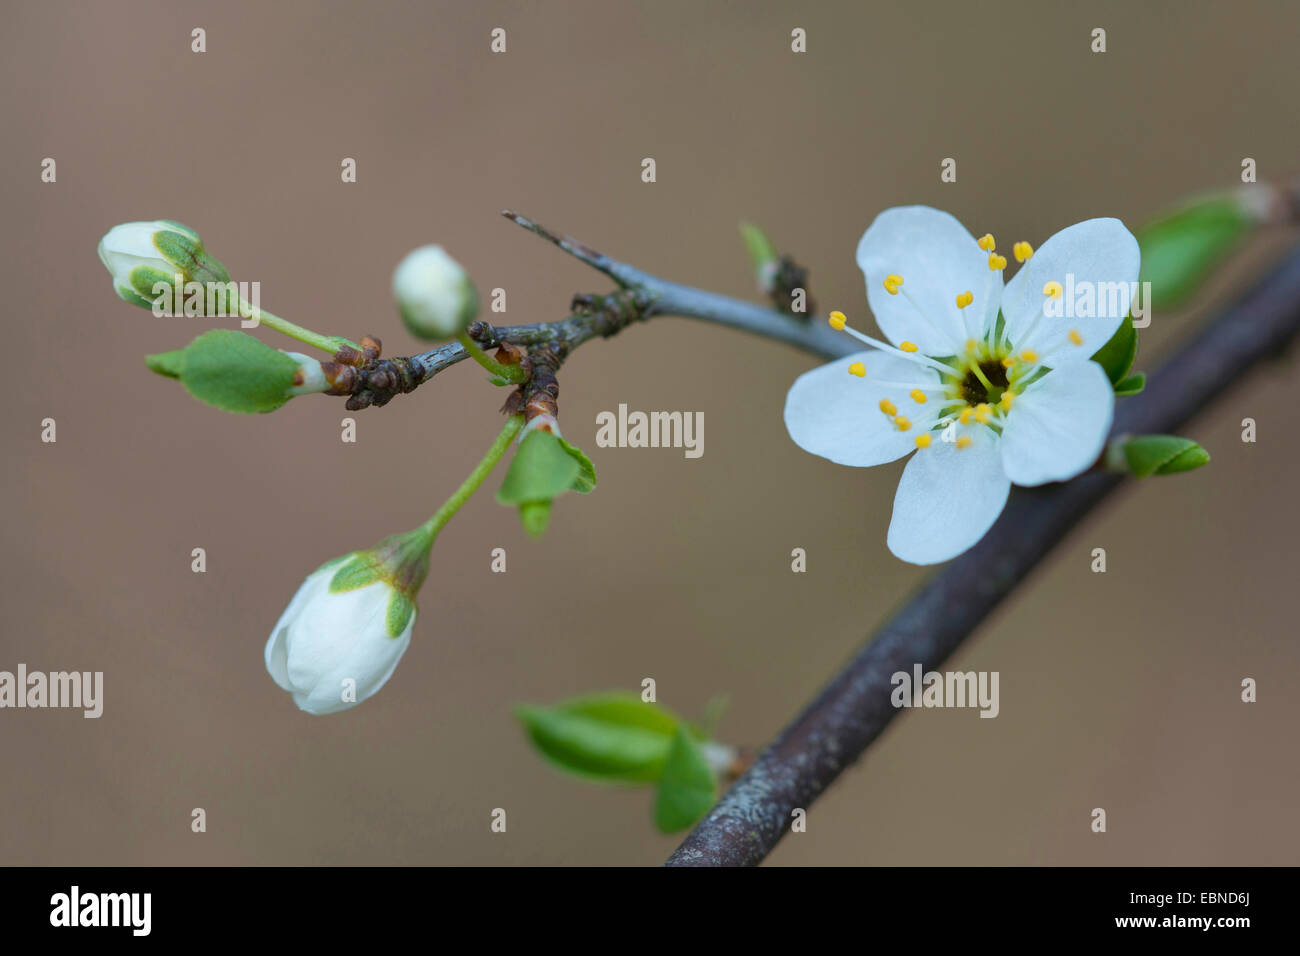 blackthorn, sloe (Prunus spinosa), blooming short shoot, Germany Stock Photo